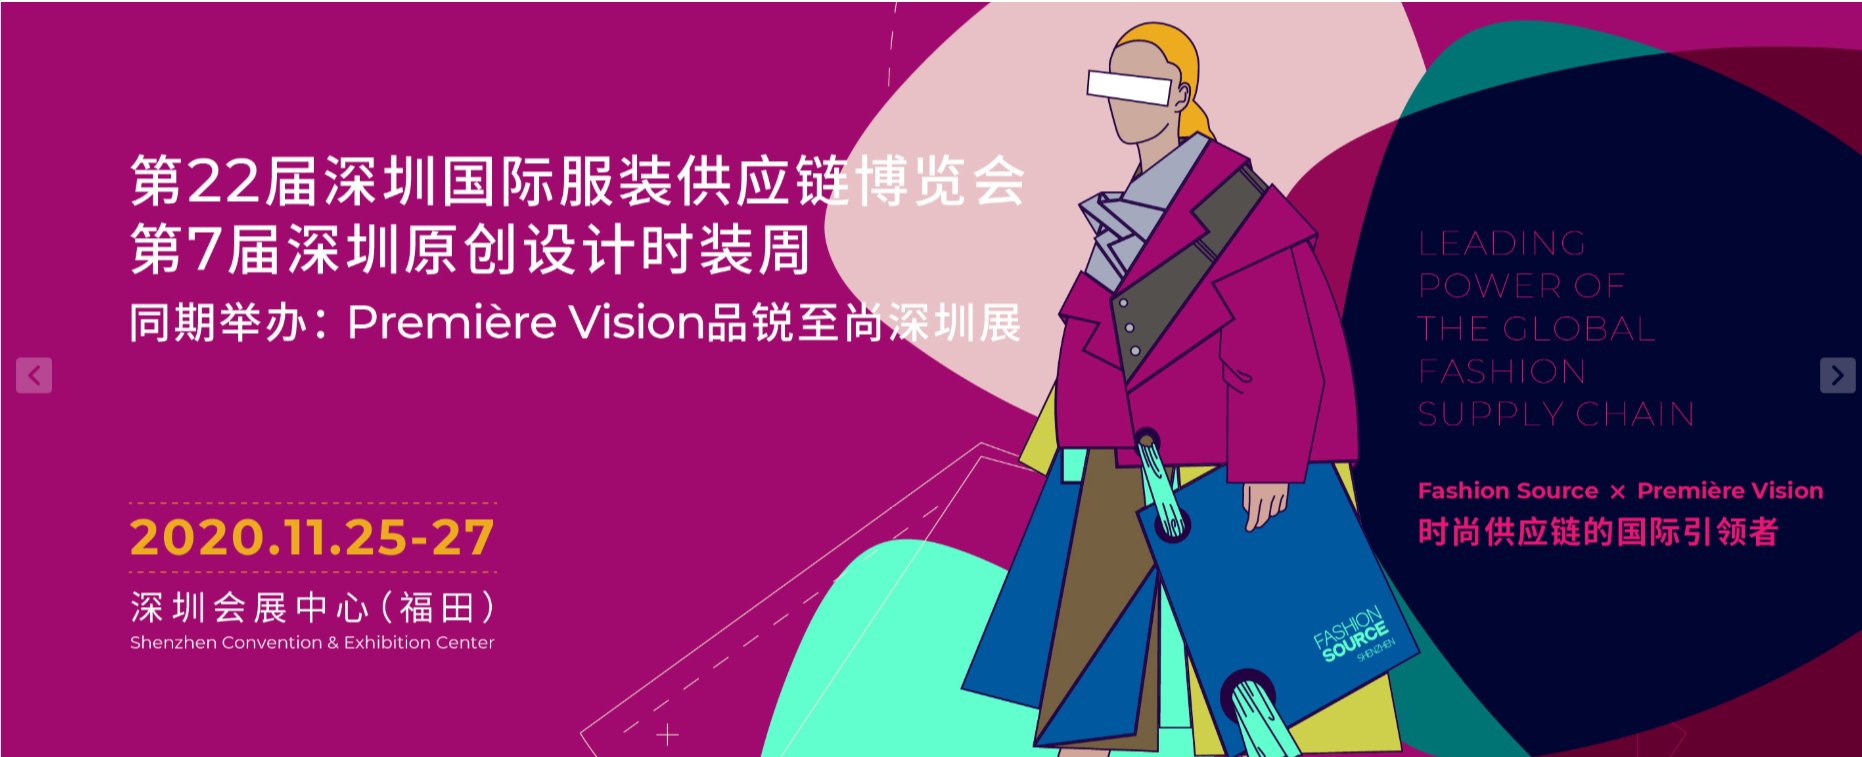 2020FS深圳國際服裝供應鏈博覽會